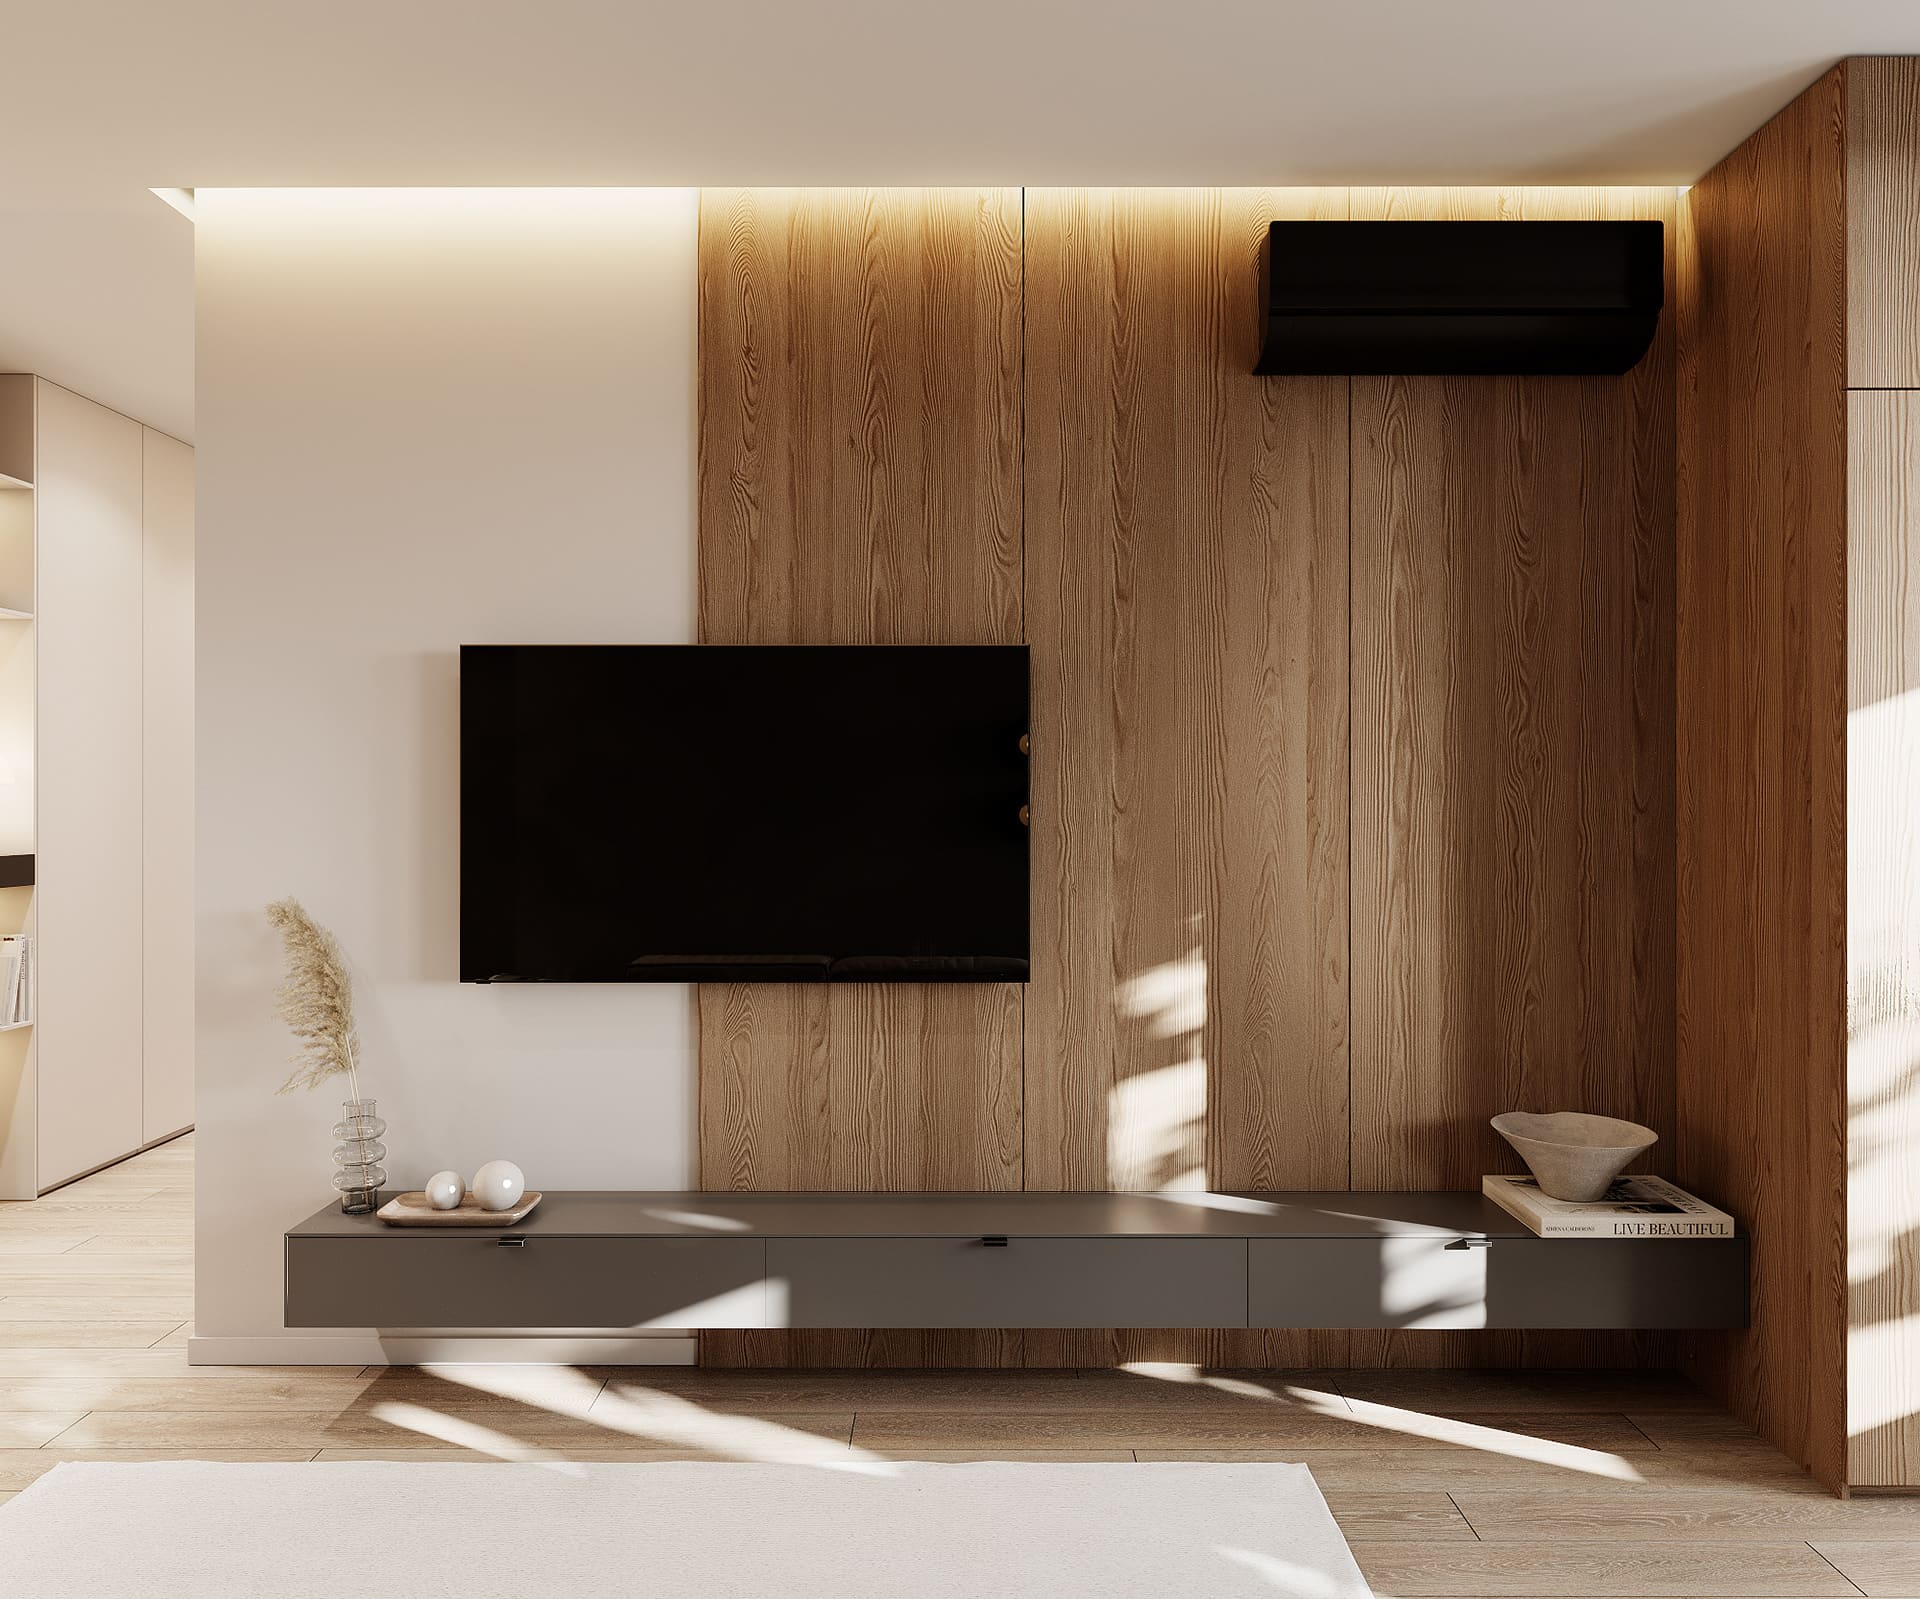 Лаконічна квартира у стилі мінімалізм, кухня-вітальня, фото 10